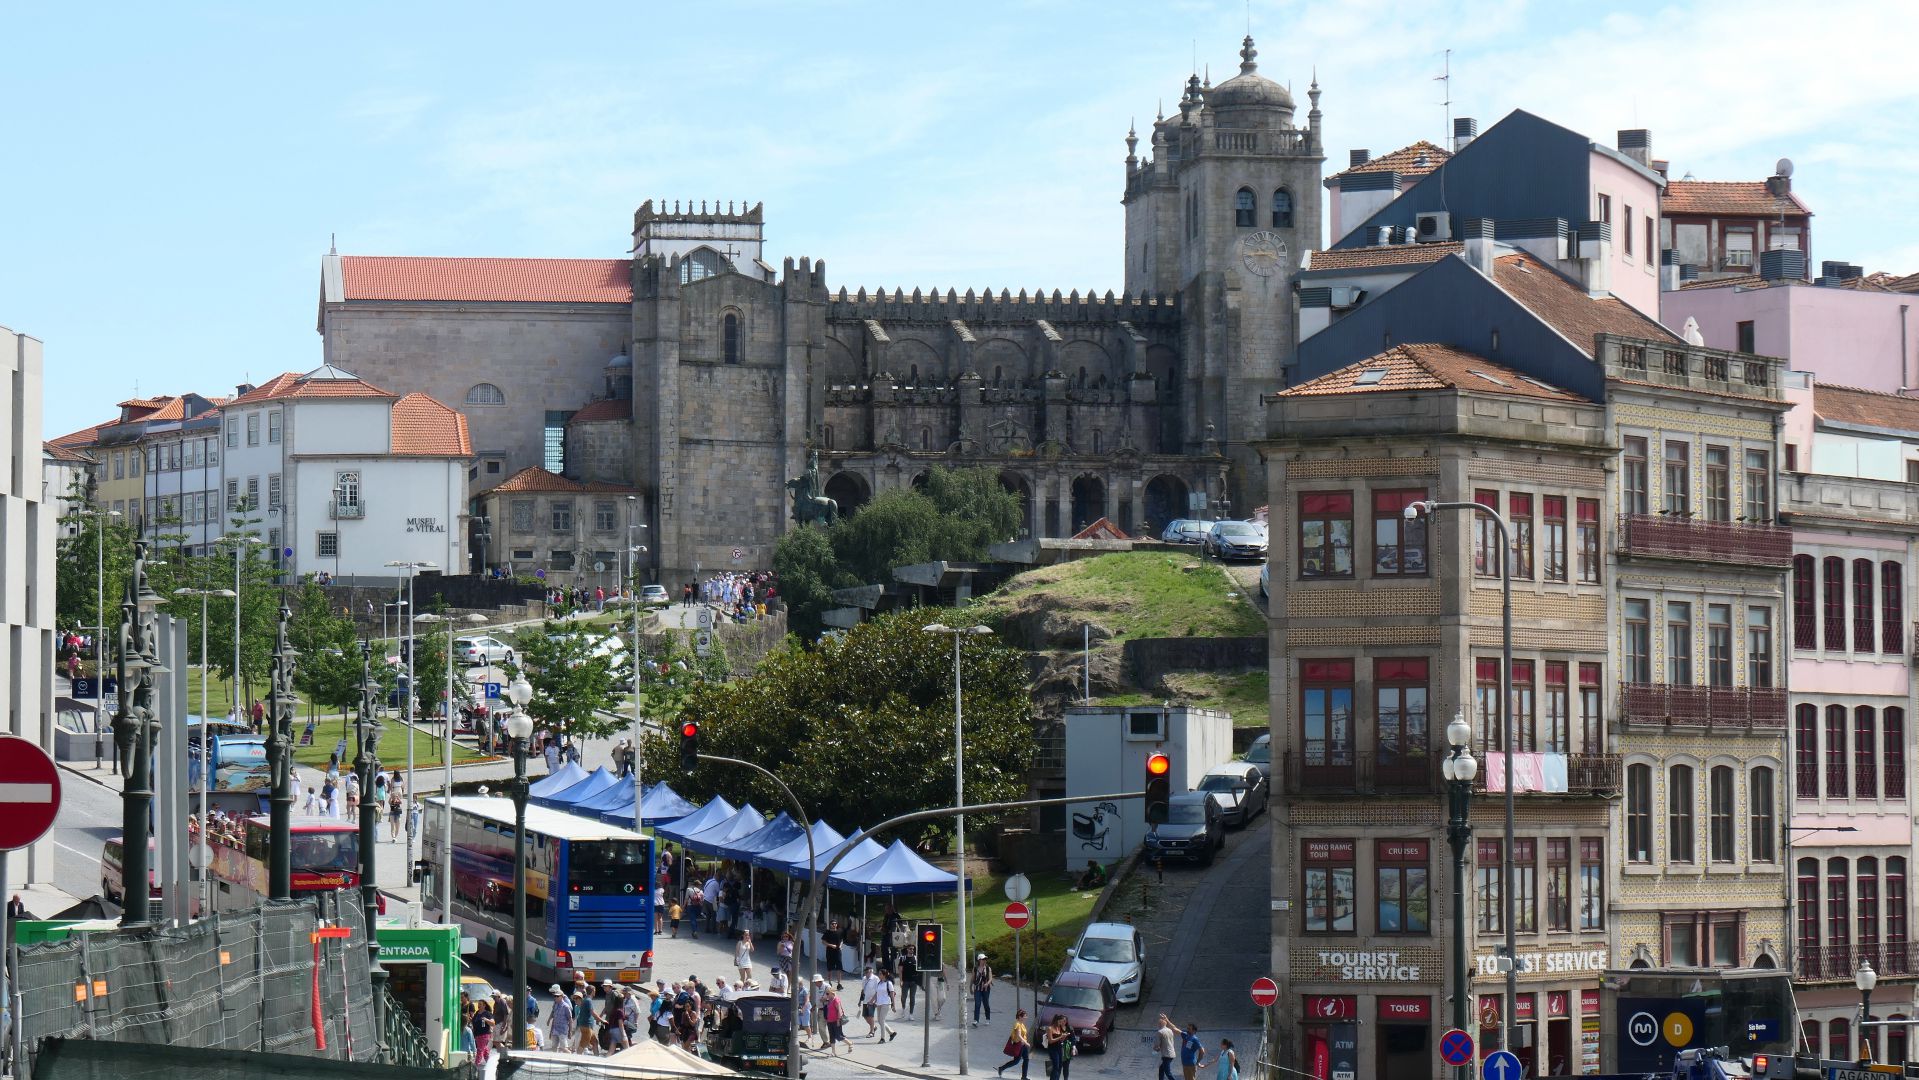 PORTO -  in einiger Entfernung steht die Kathedrale von Porto, die wir übermorgen besuchen werden